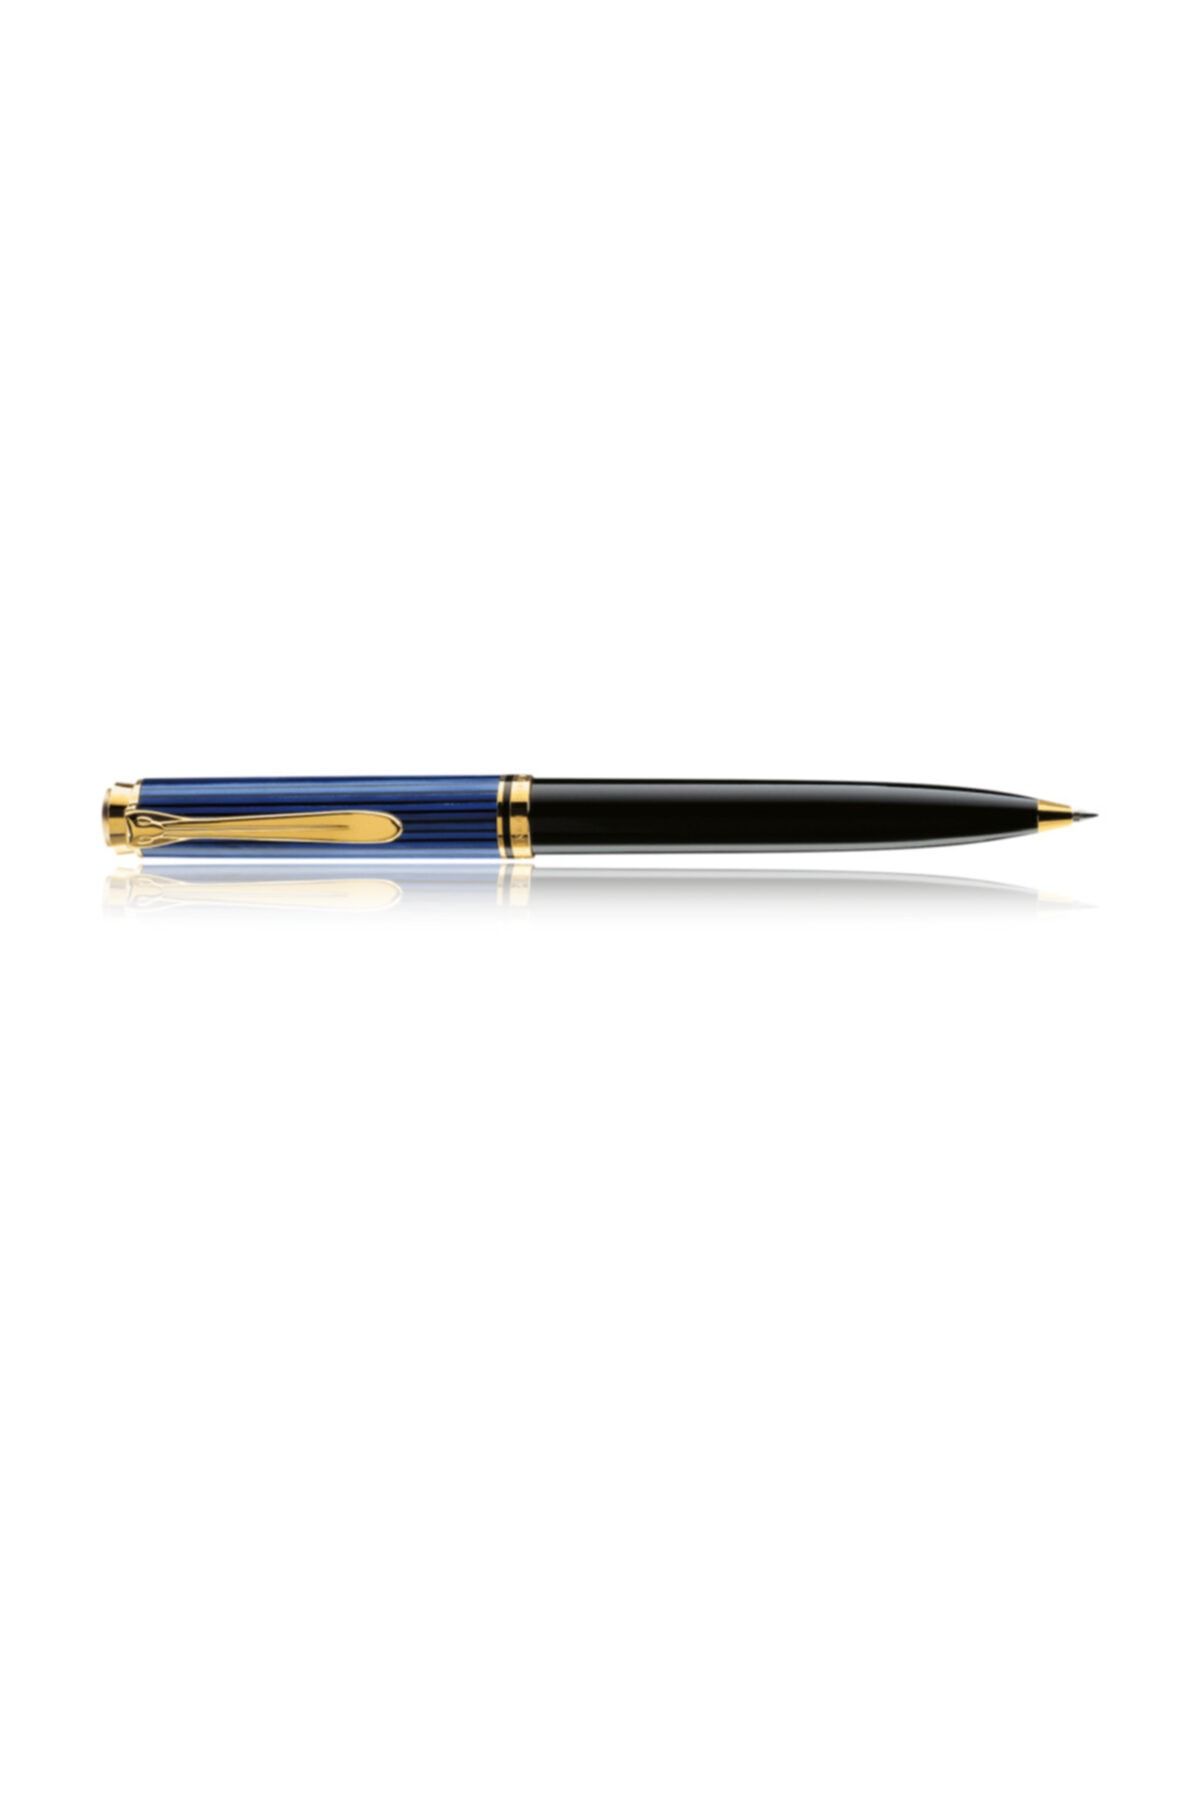 Pelikan K400 Tükenmez Kalem Sedefli Mavi Siyah Pel-k400m